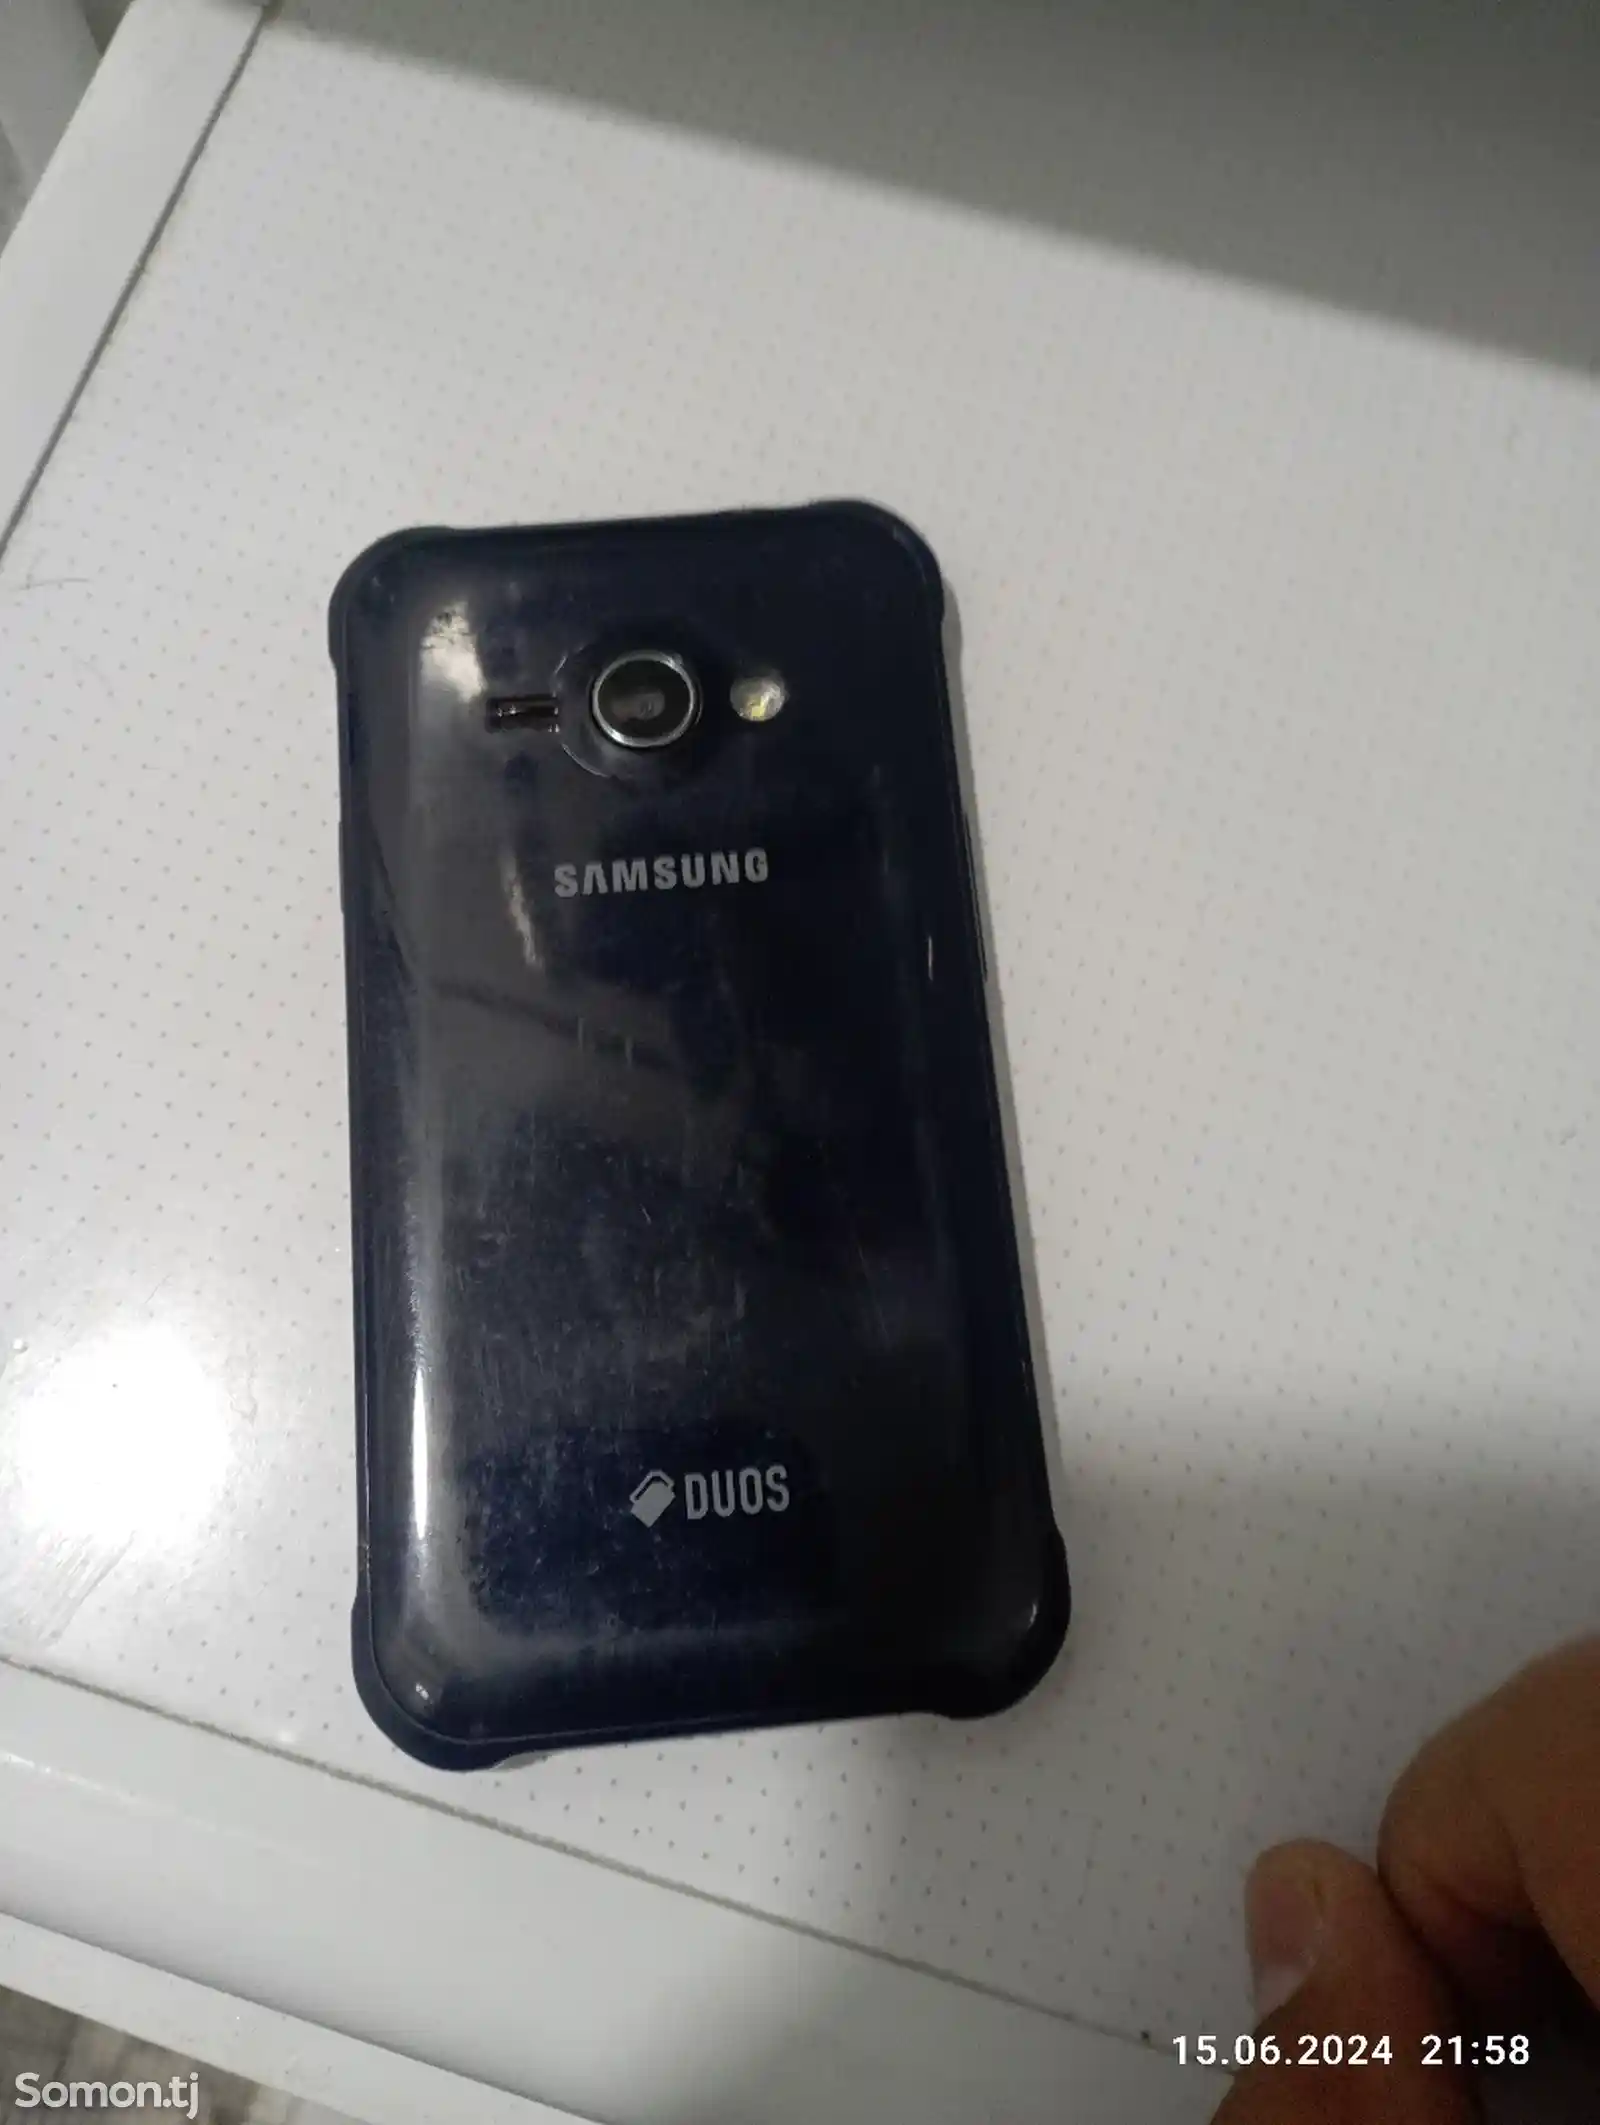 Samsung galaxy j1 ace-3